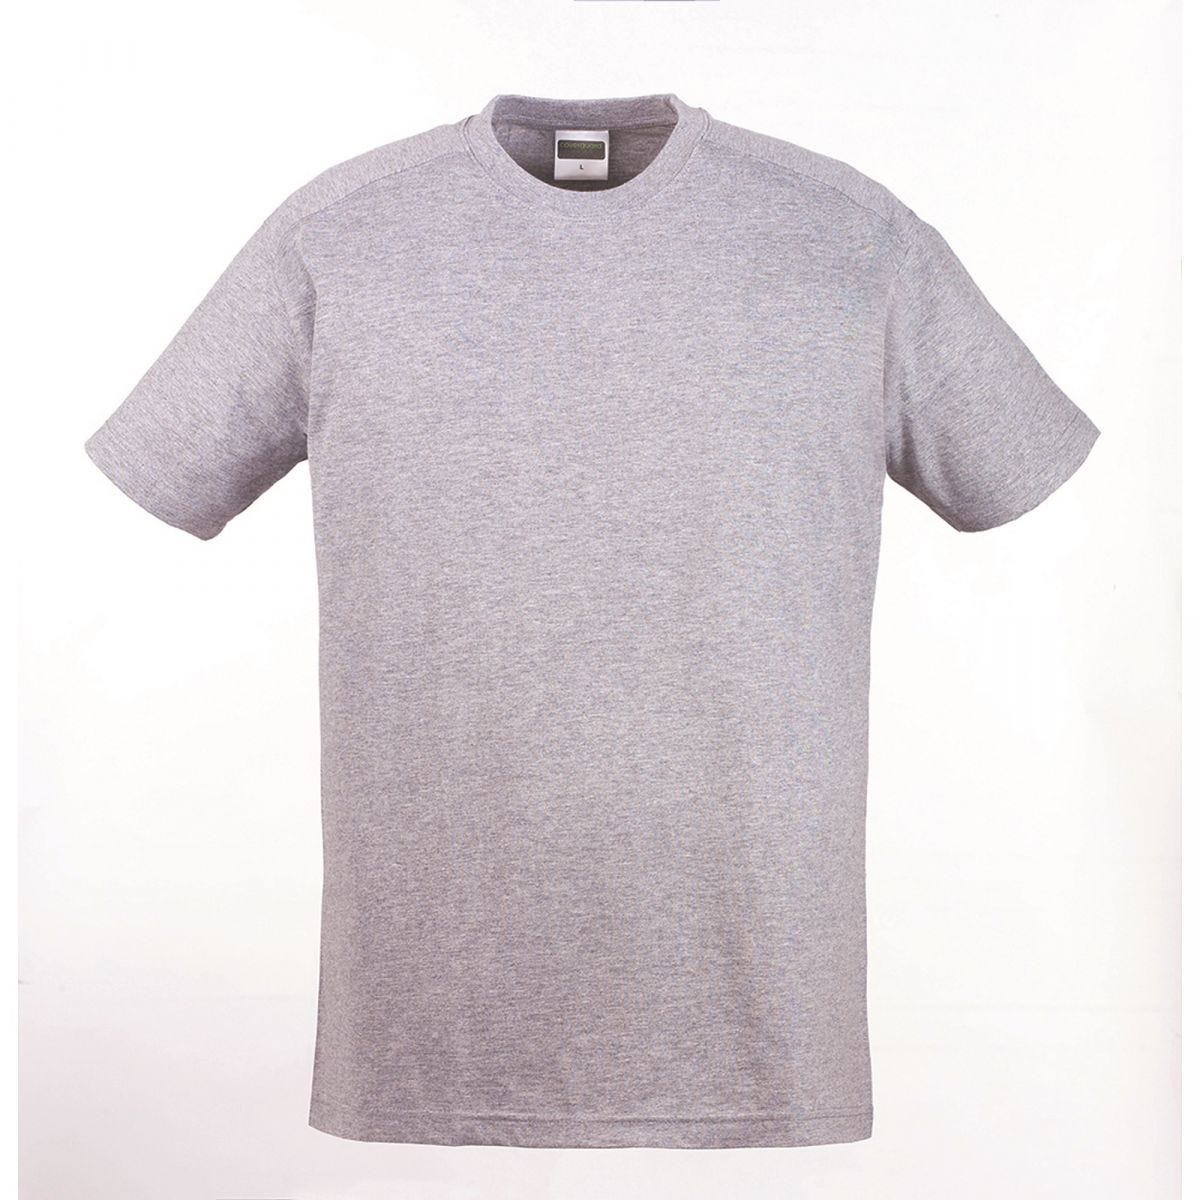 HIKE T-shirt MC gris chiné, 85% coton/15% viscose, 190g/m² - COVERGUARD - Taille XL 0